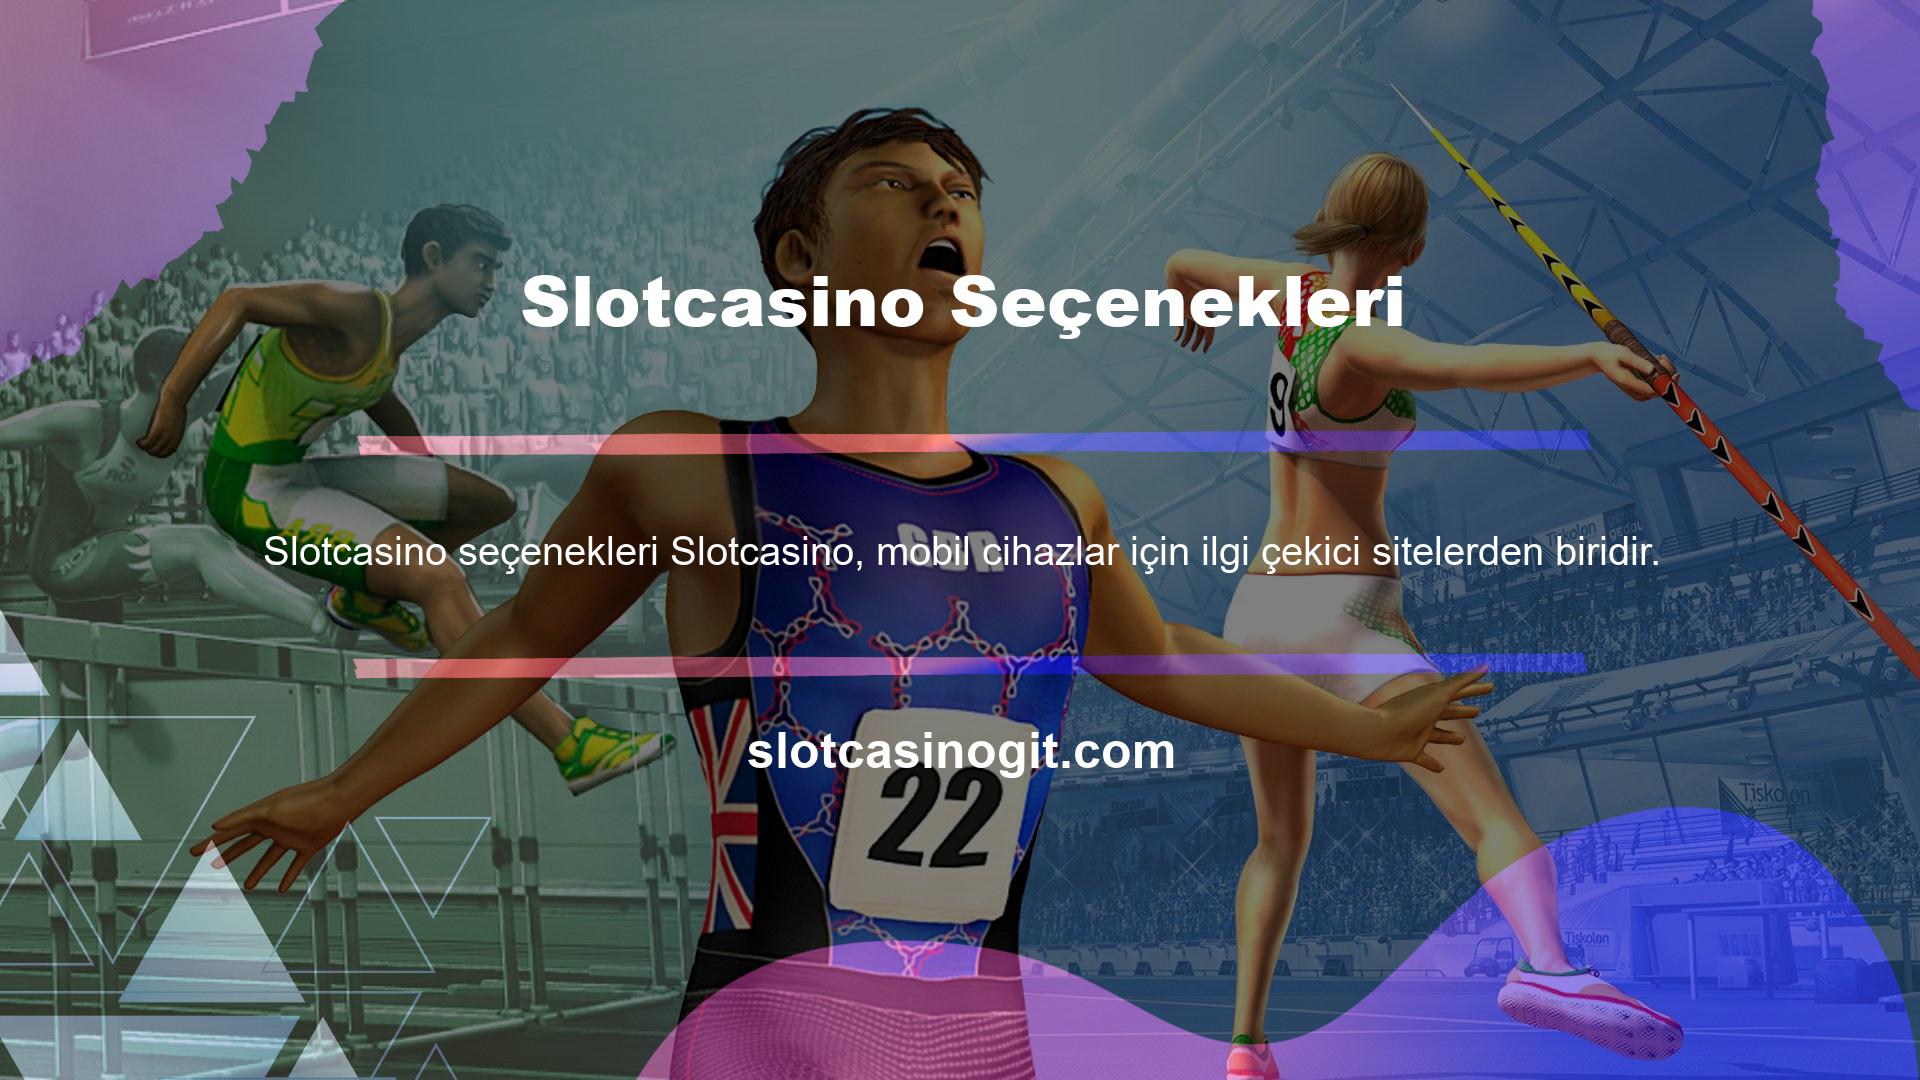 Slotcasino, mobil cihazlar için optimize edilmiş bir sitedir, bu da sitedeki oyunları tablet, akıllı telefon veya PC'nizi kullanarak oynayabileceğiniz anlamına gelir